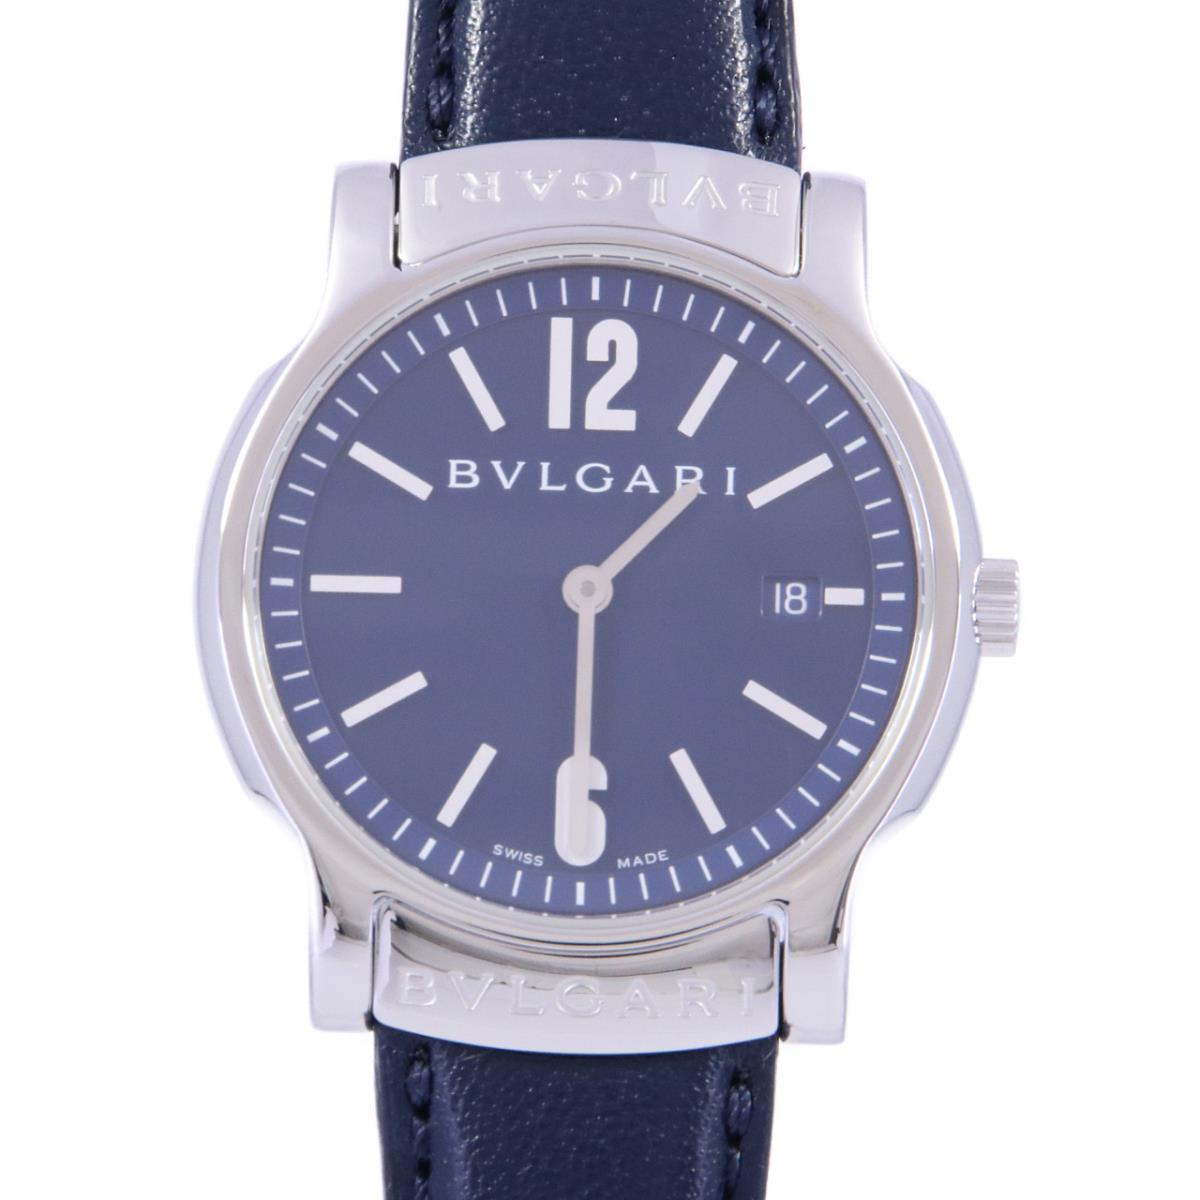 ブルガリ ソロテンポ ST35Sの価格一覧 - 腕時計投資.com